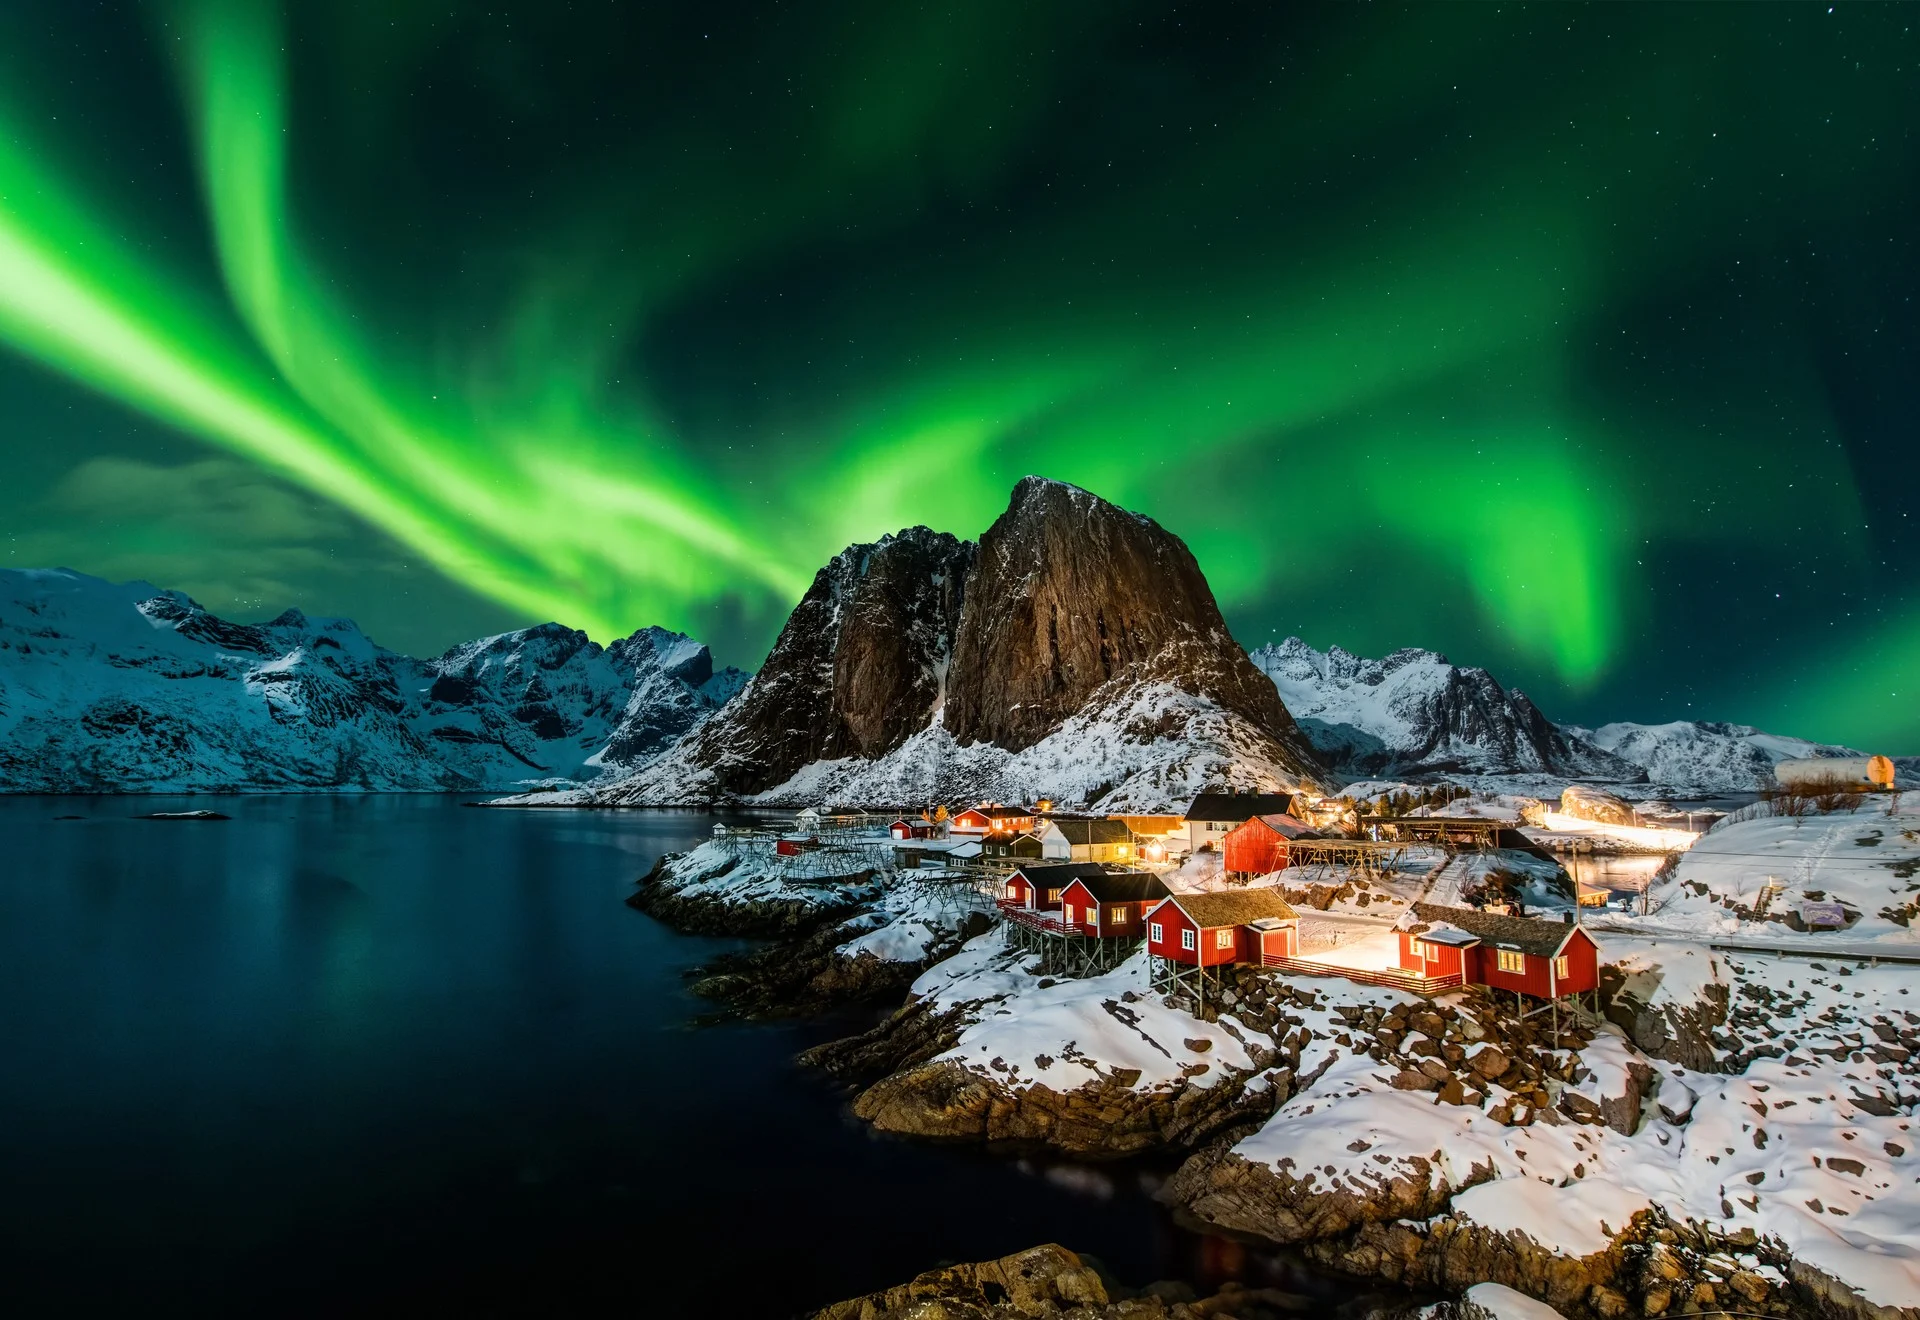 Northern Lights in Reine, Norway